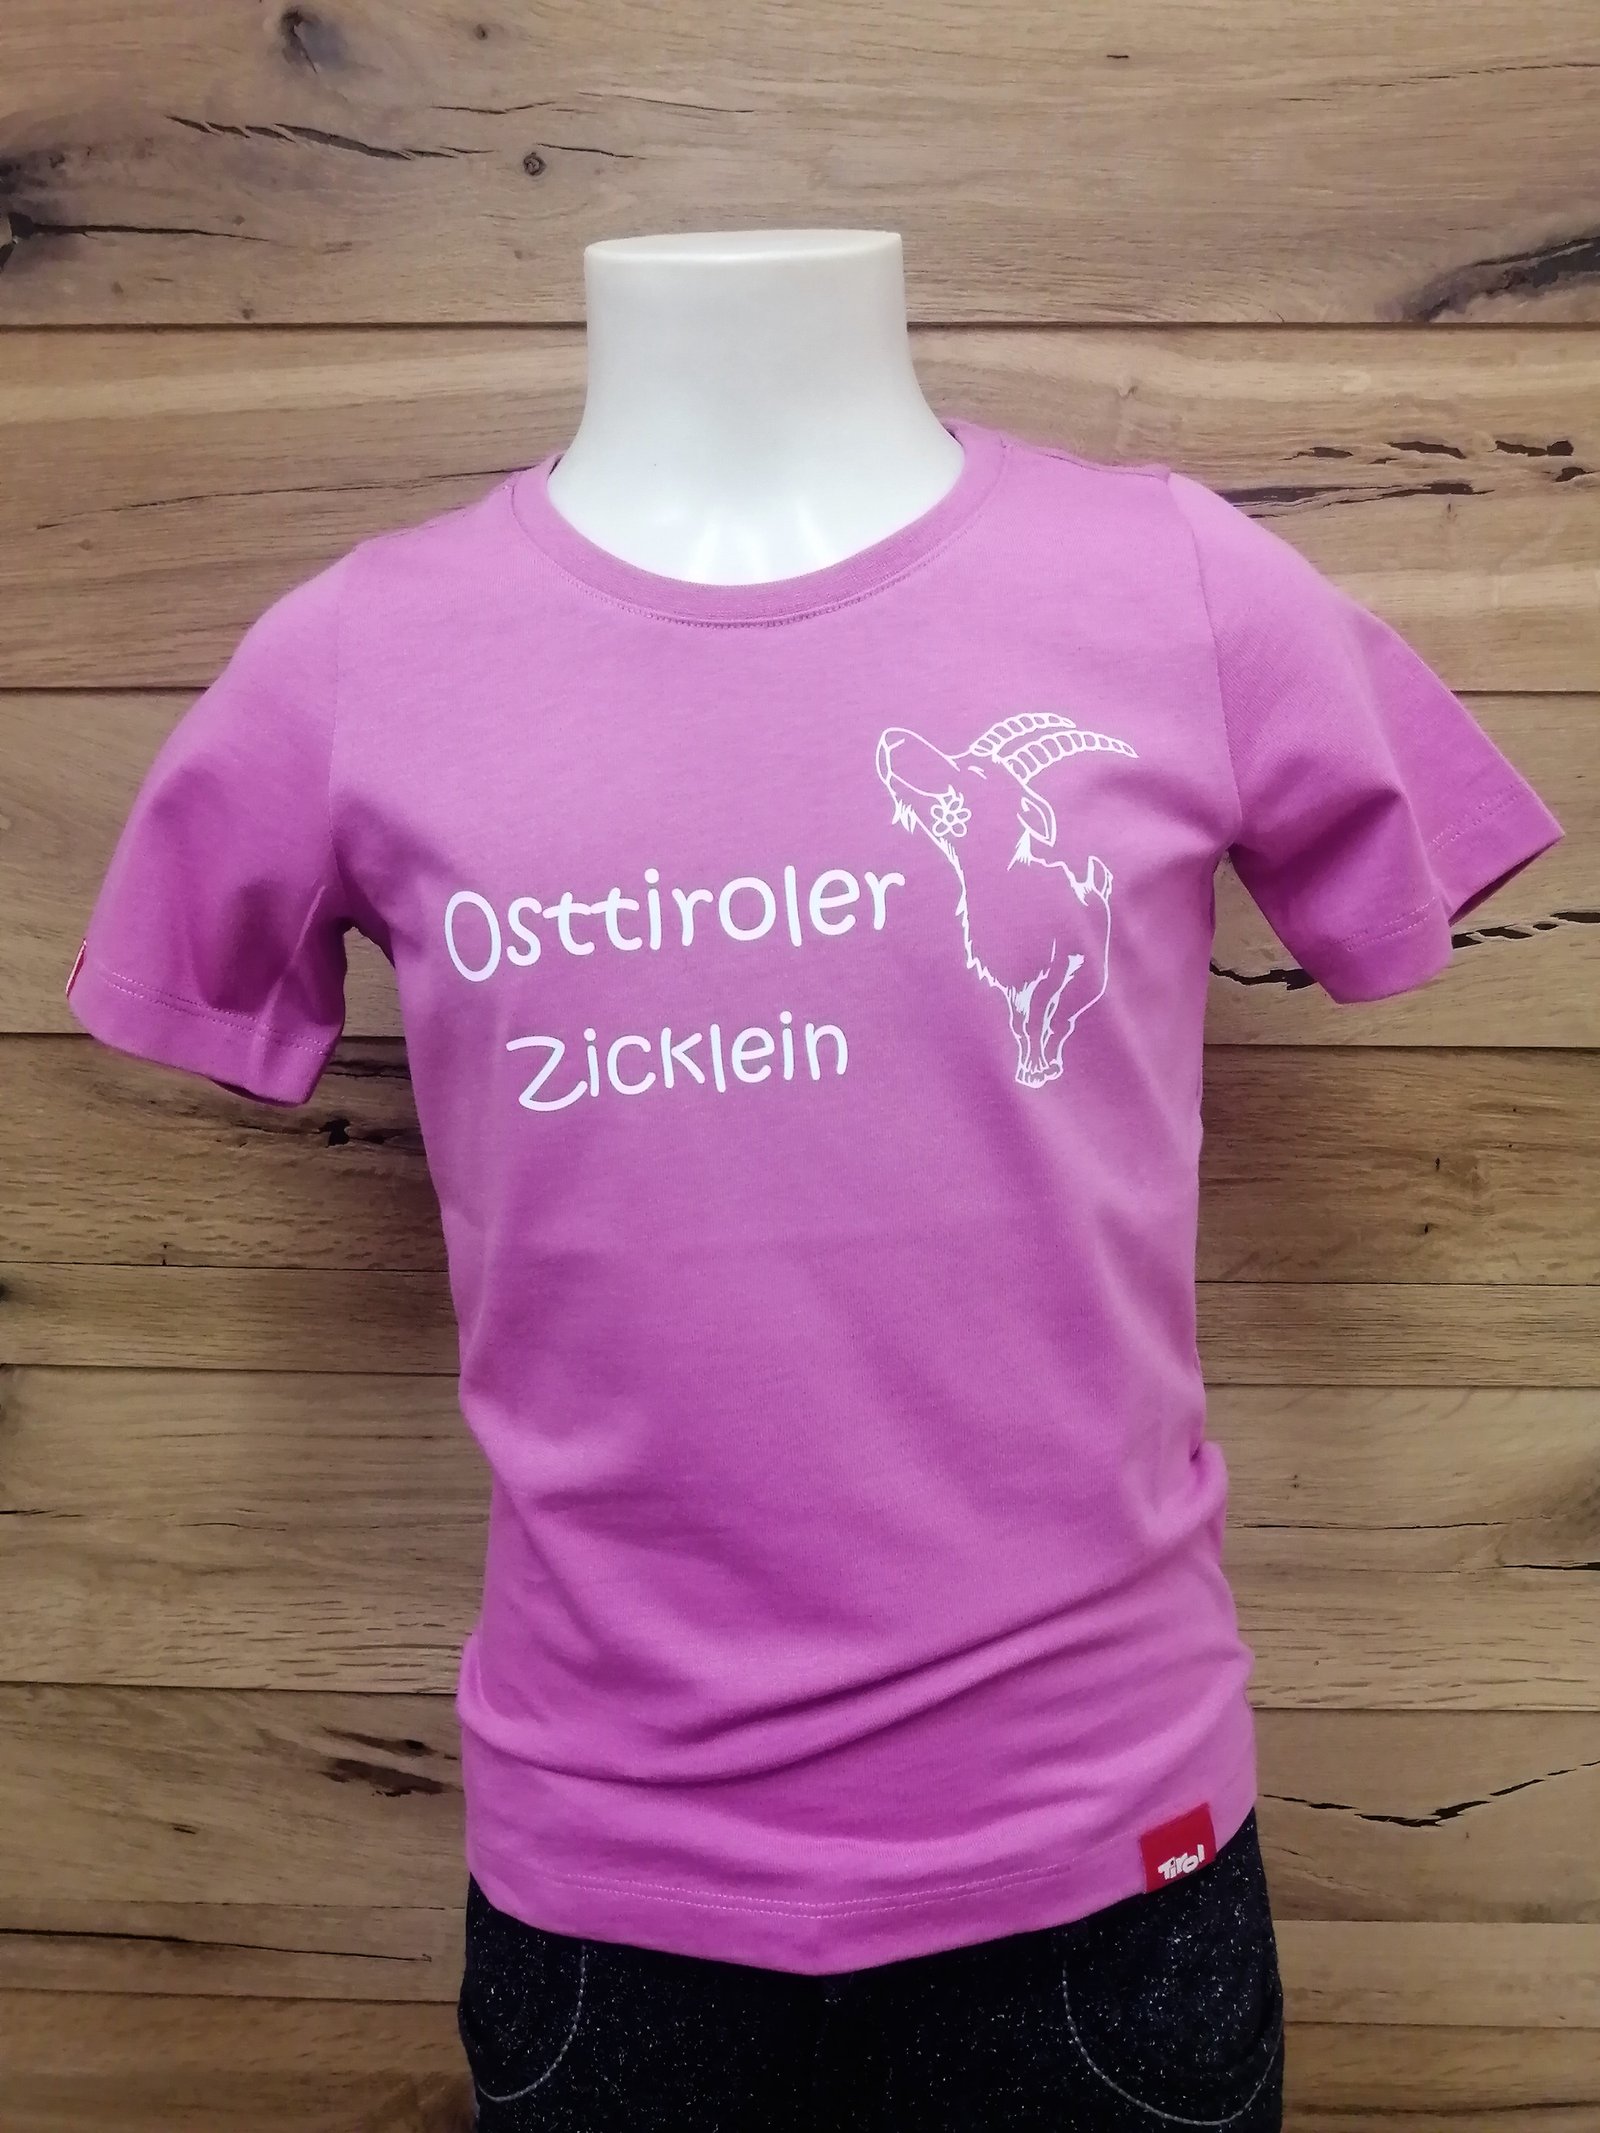 Kinder T-Shirt "Ostttiroler Zicklein" pink